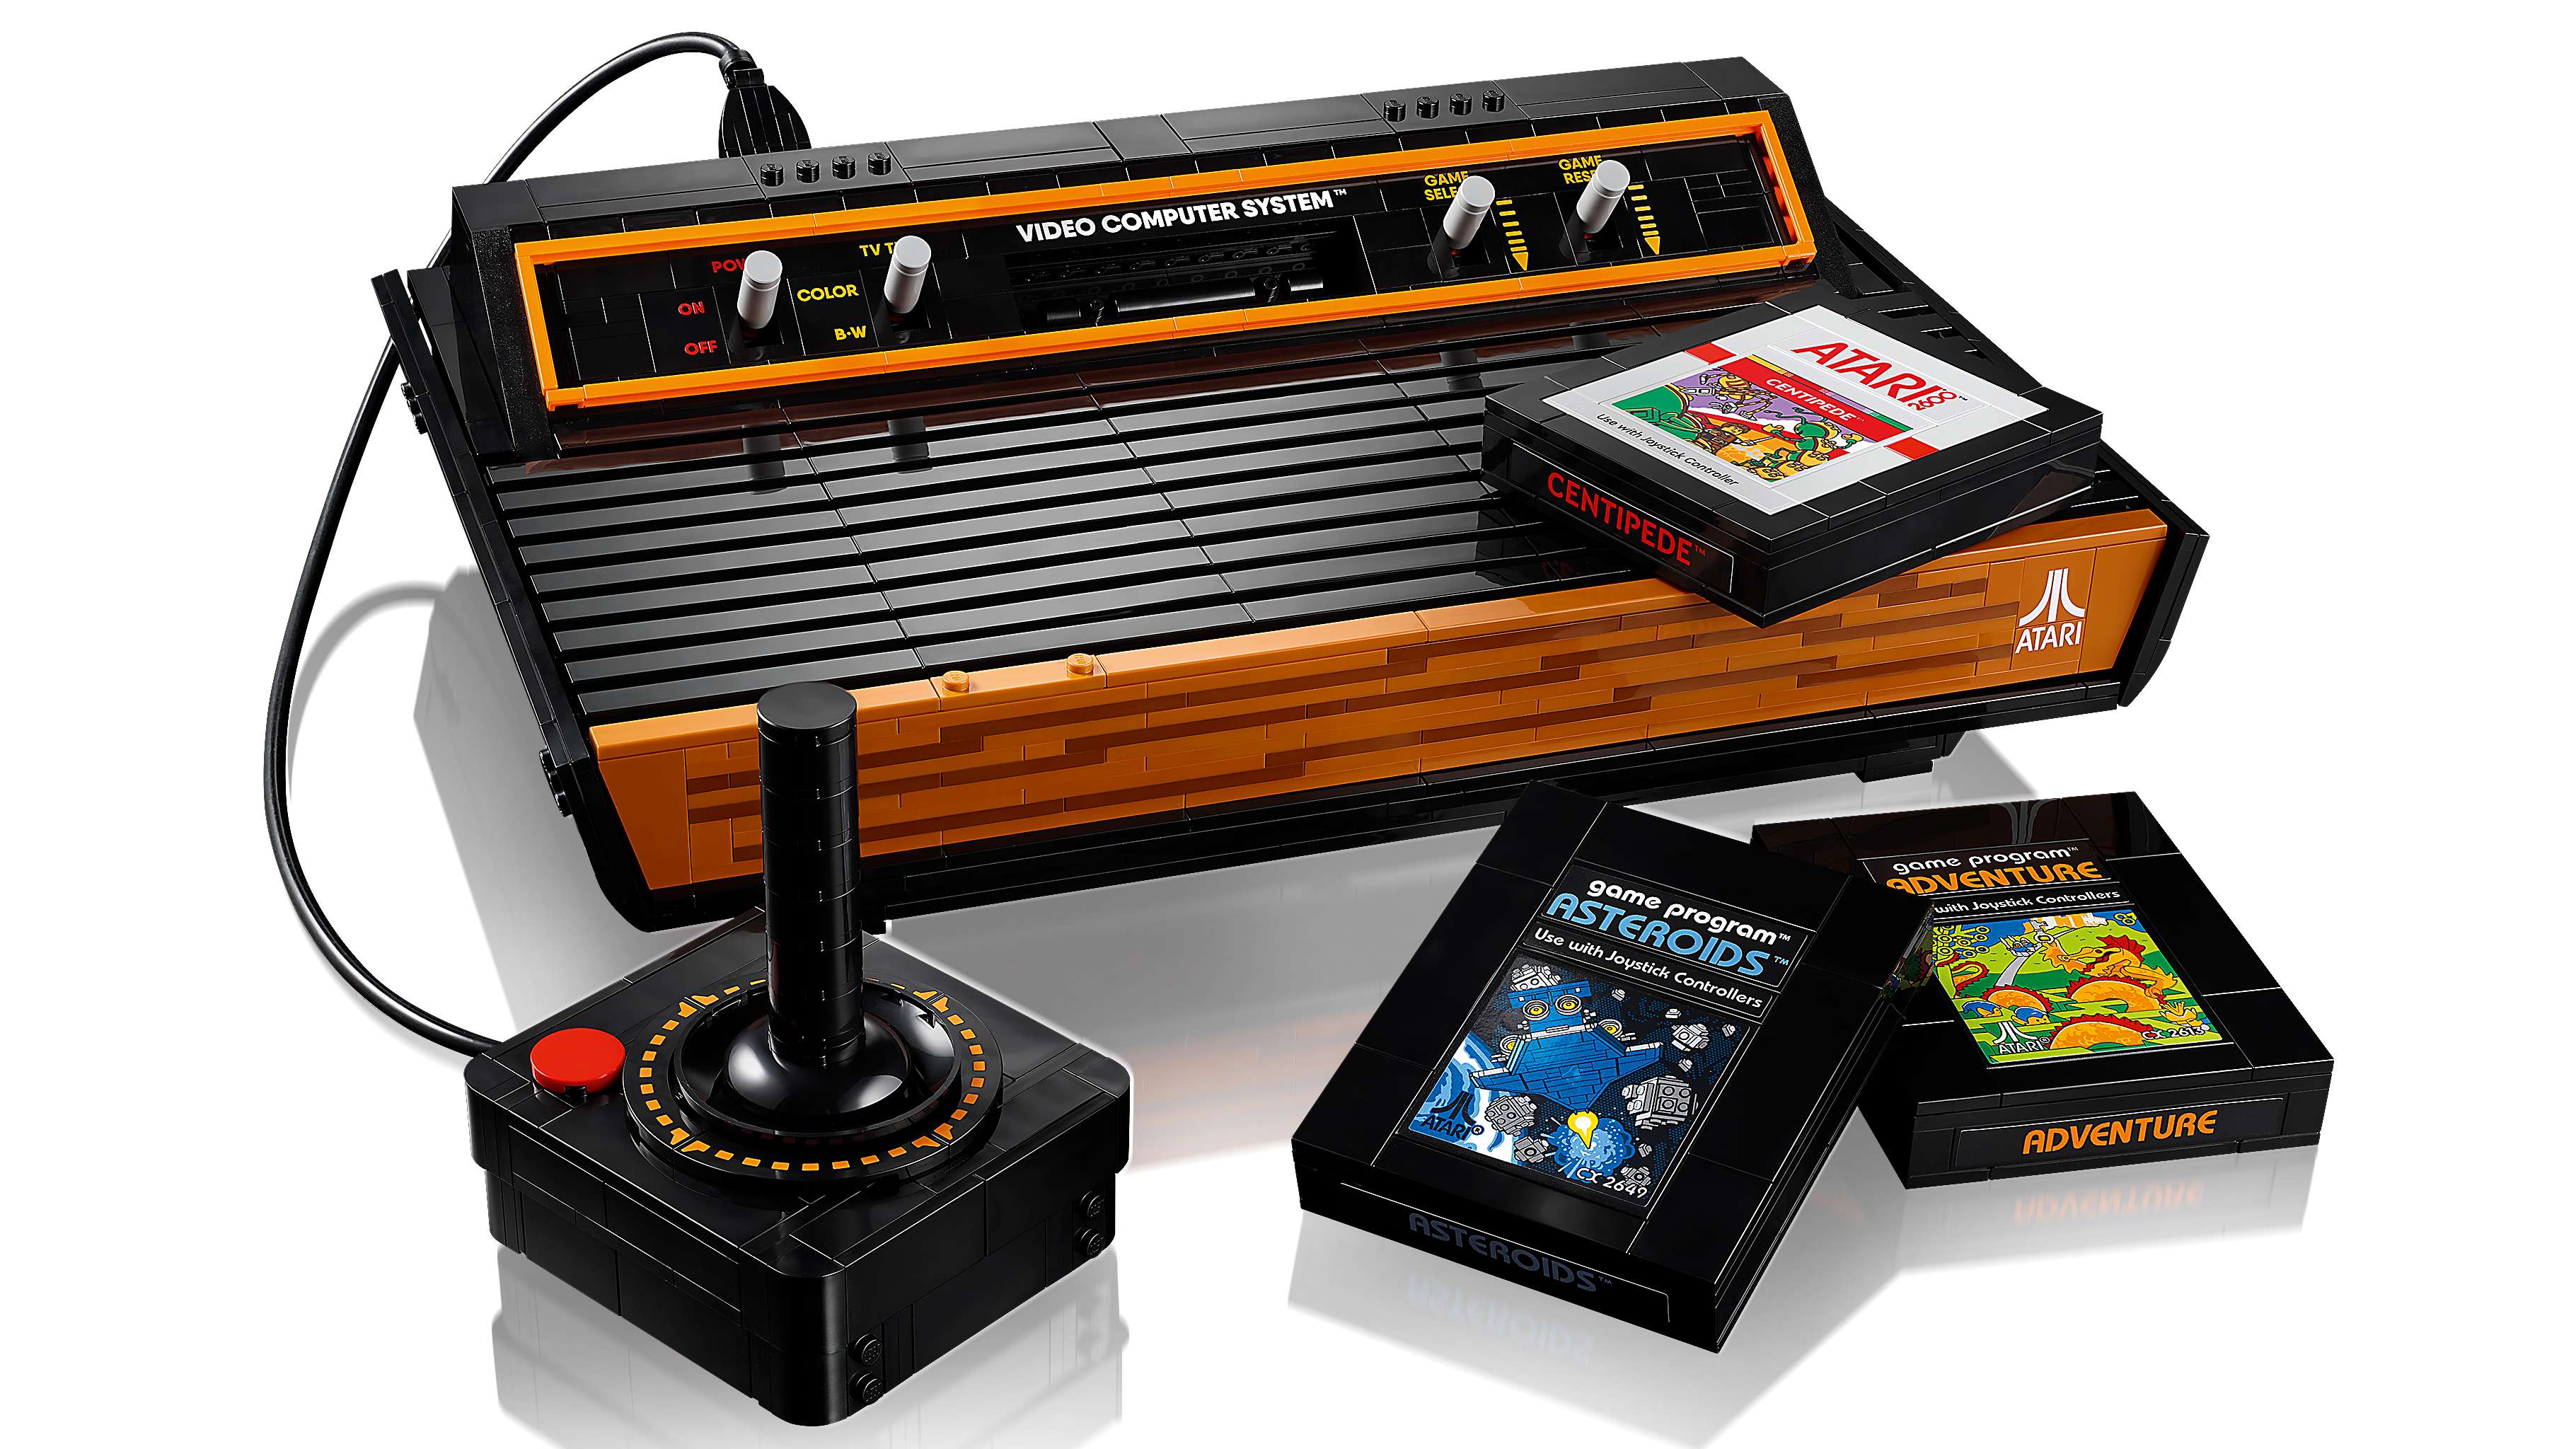 Atari® 2600